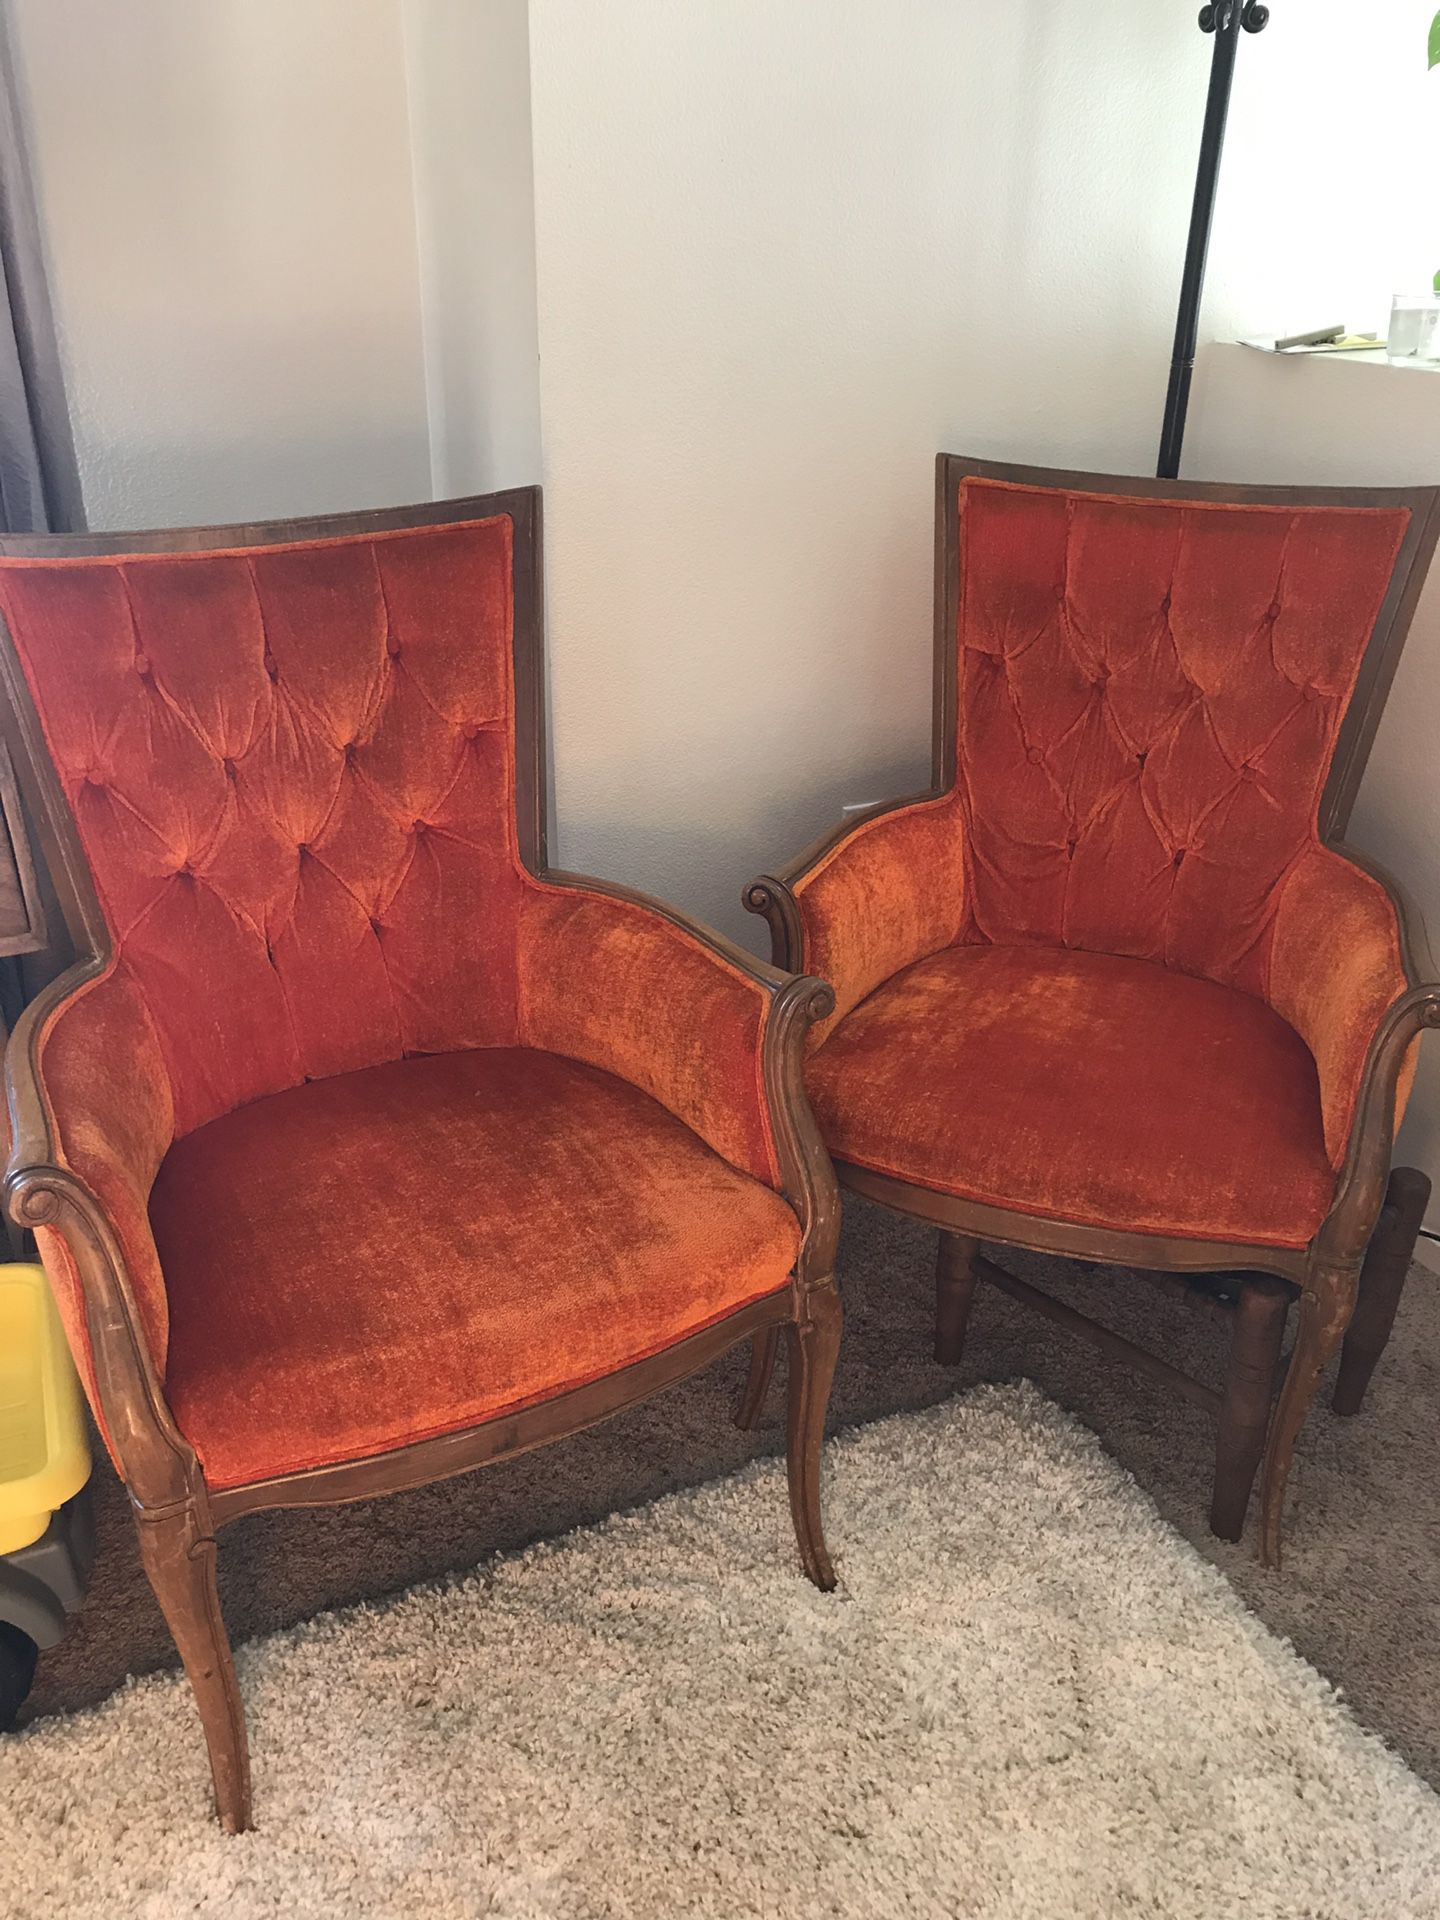 Orange antique chairs